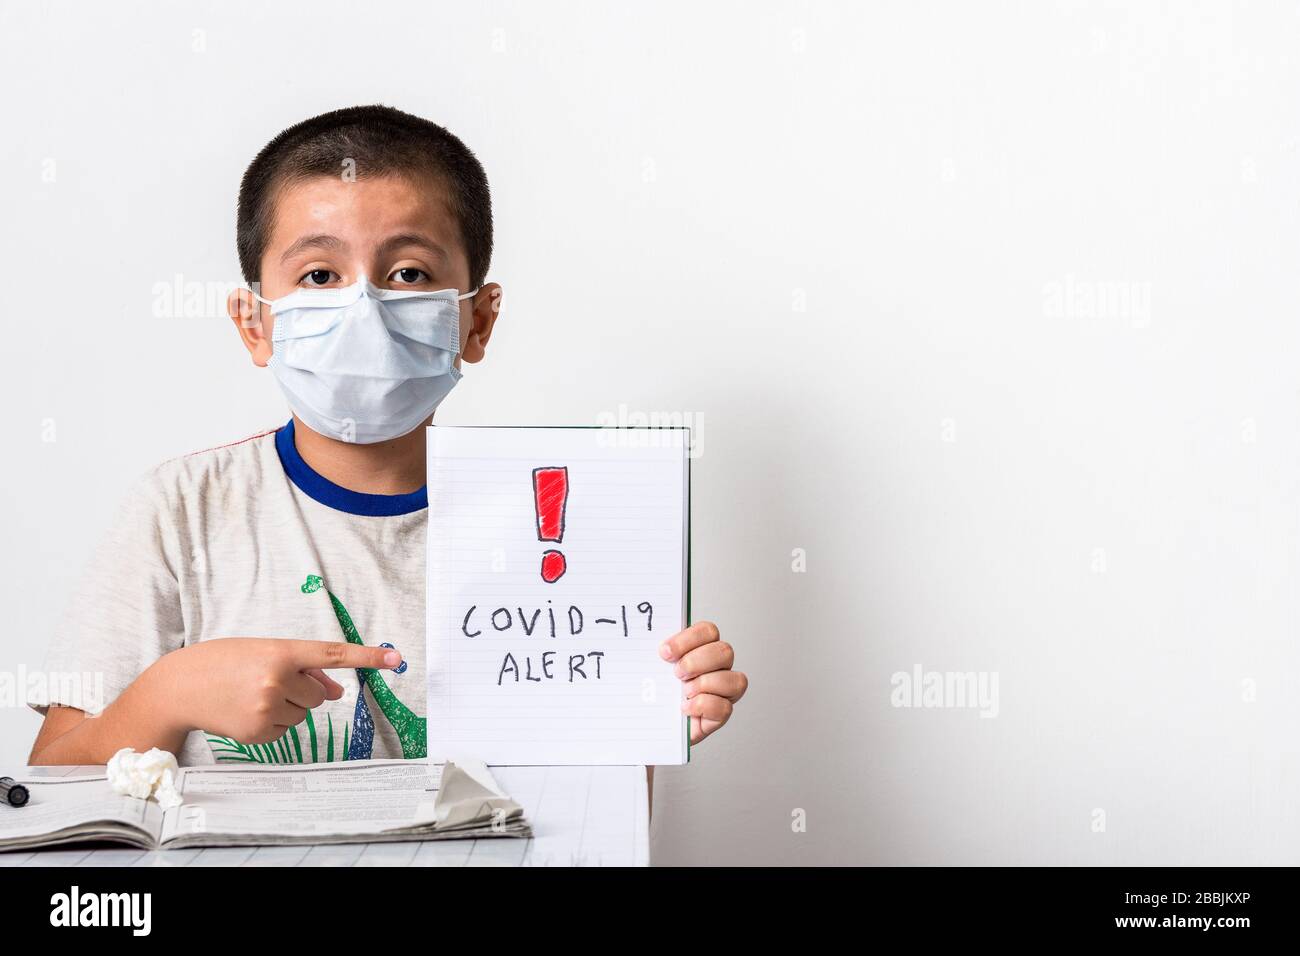 Corona Virus/Home Schooling Konzeptbild mit einem jungen asiatischen Jungen, der Buch in der Hand hält und auf die Botschaft zeigt - Gesundheitswesen/Pandemie-Image Stockfoto